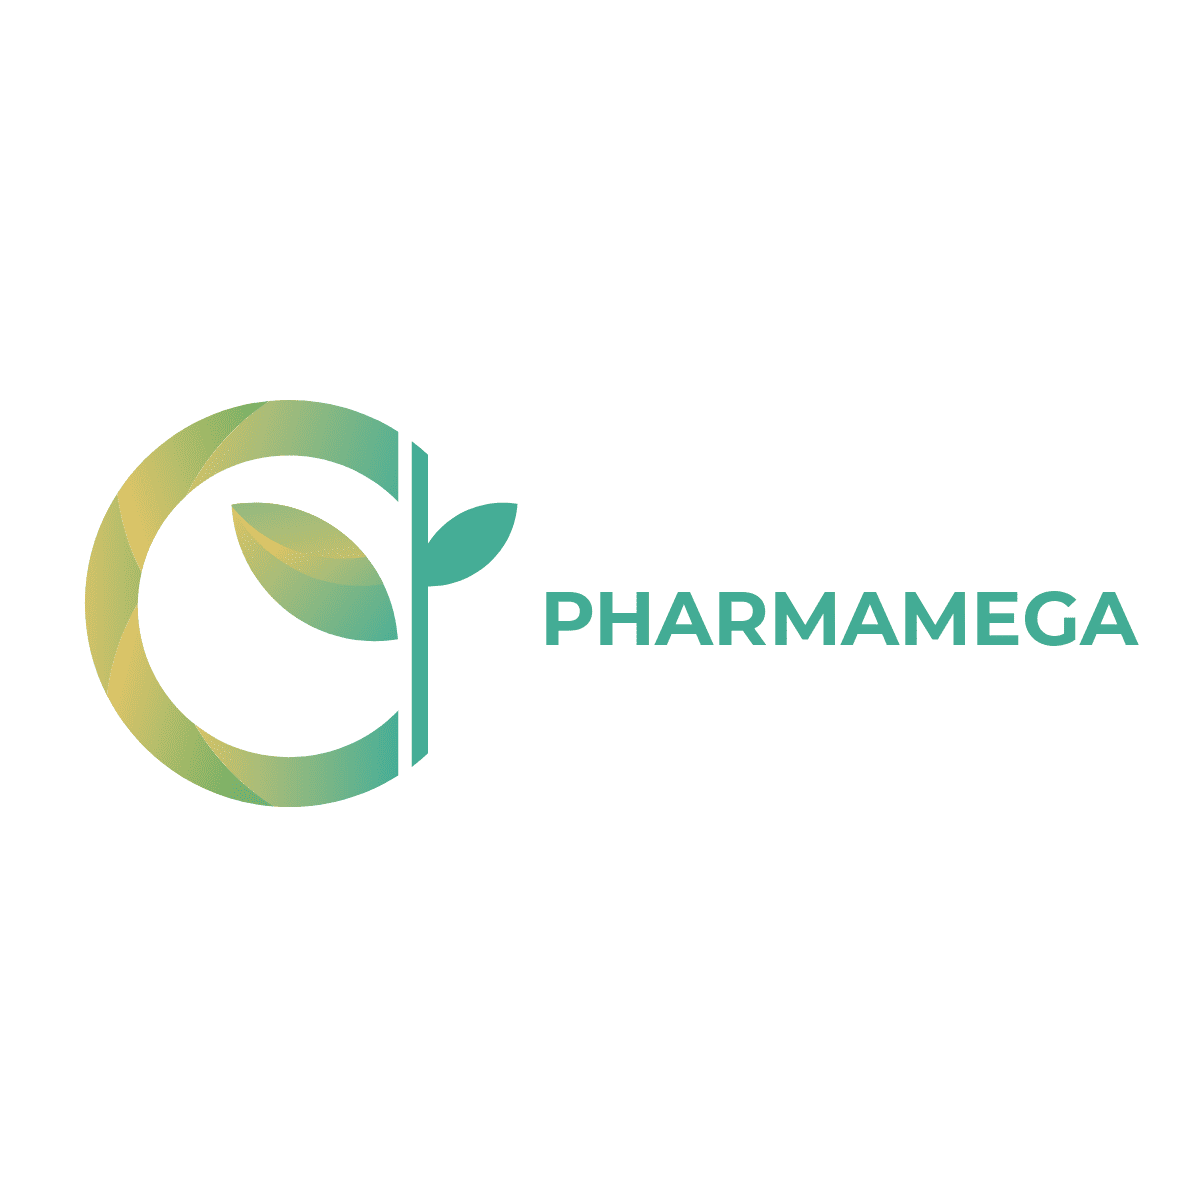 PharmaMega